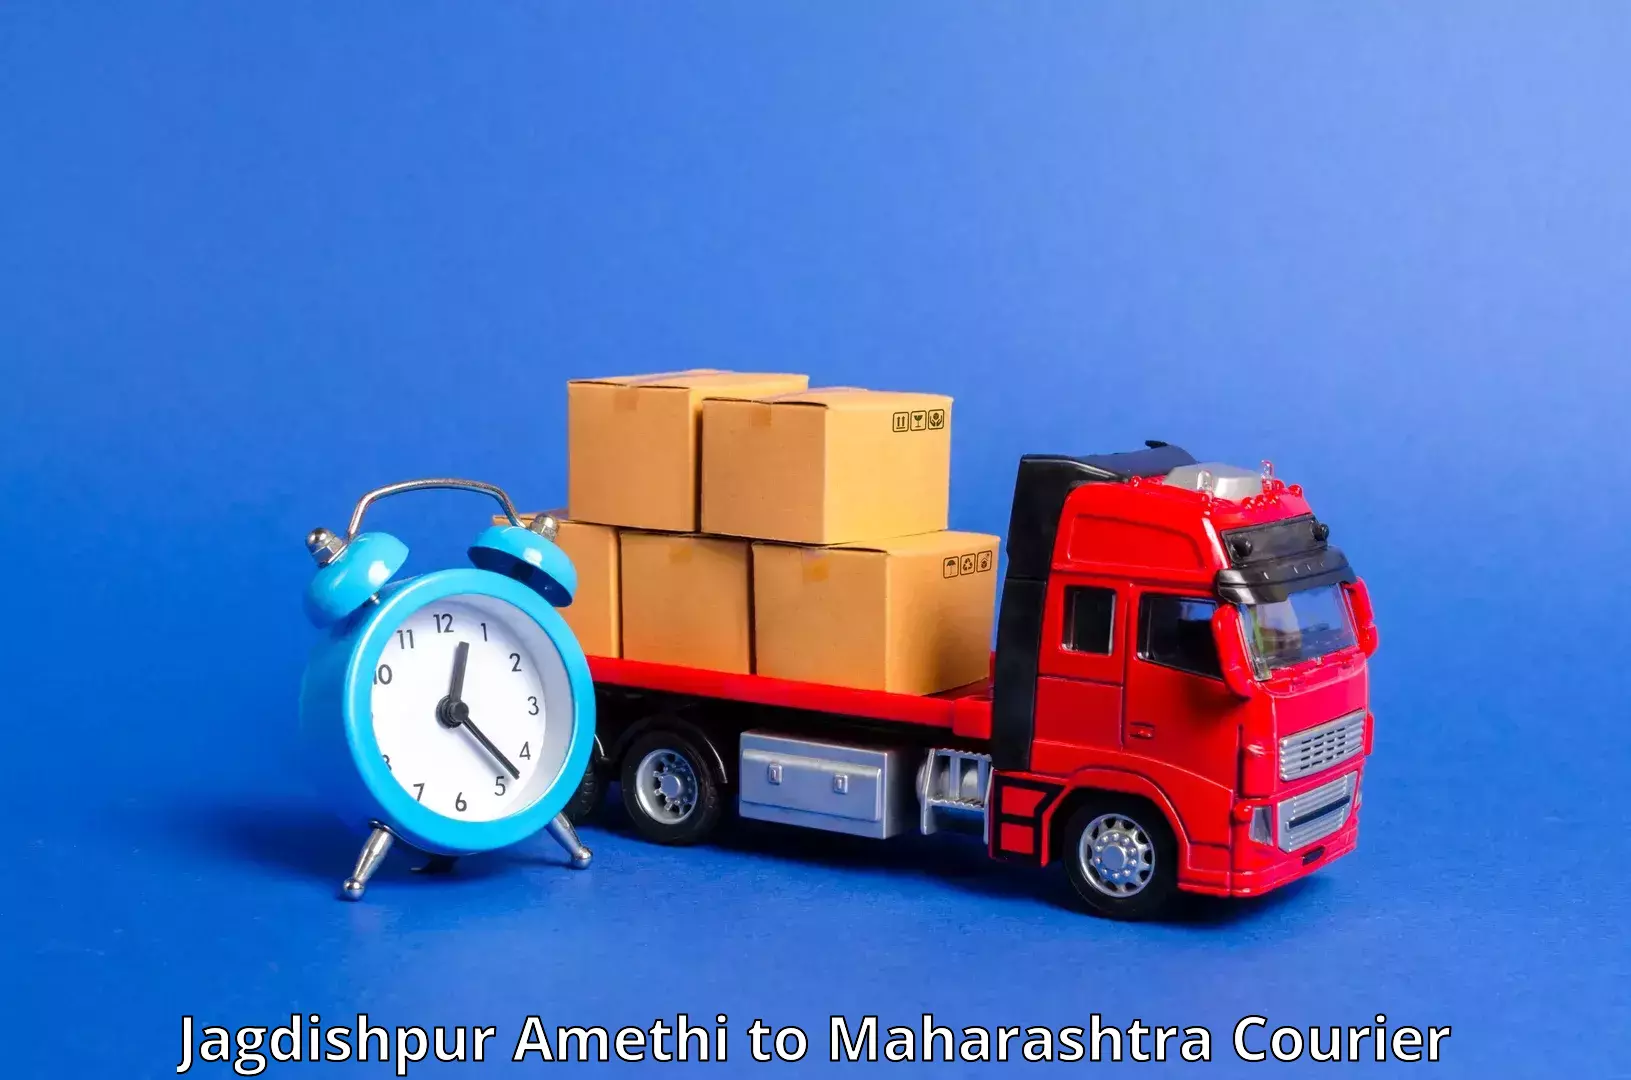 Secure package delivery in Jagdishpur Amethi to Dadar